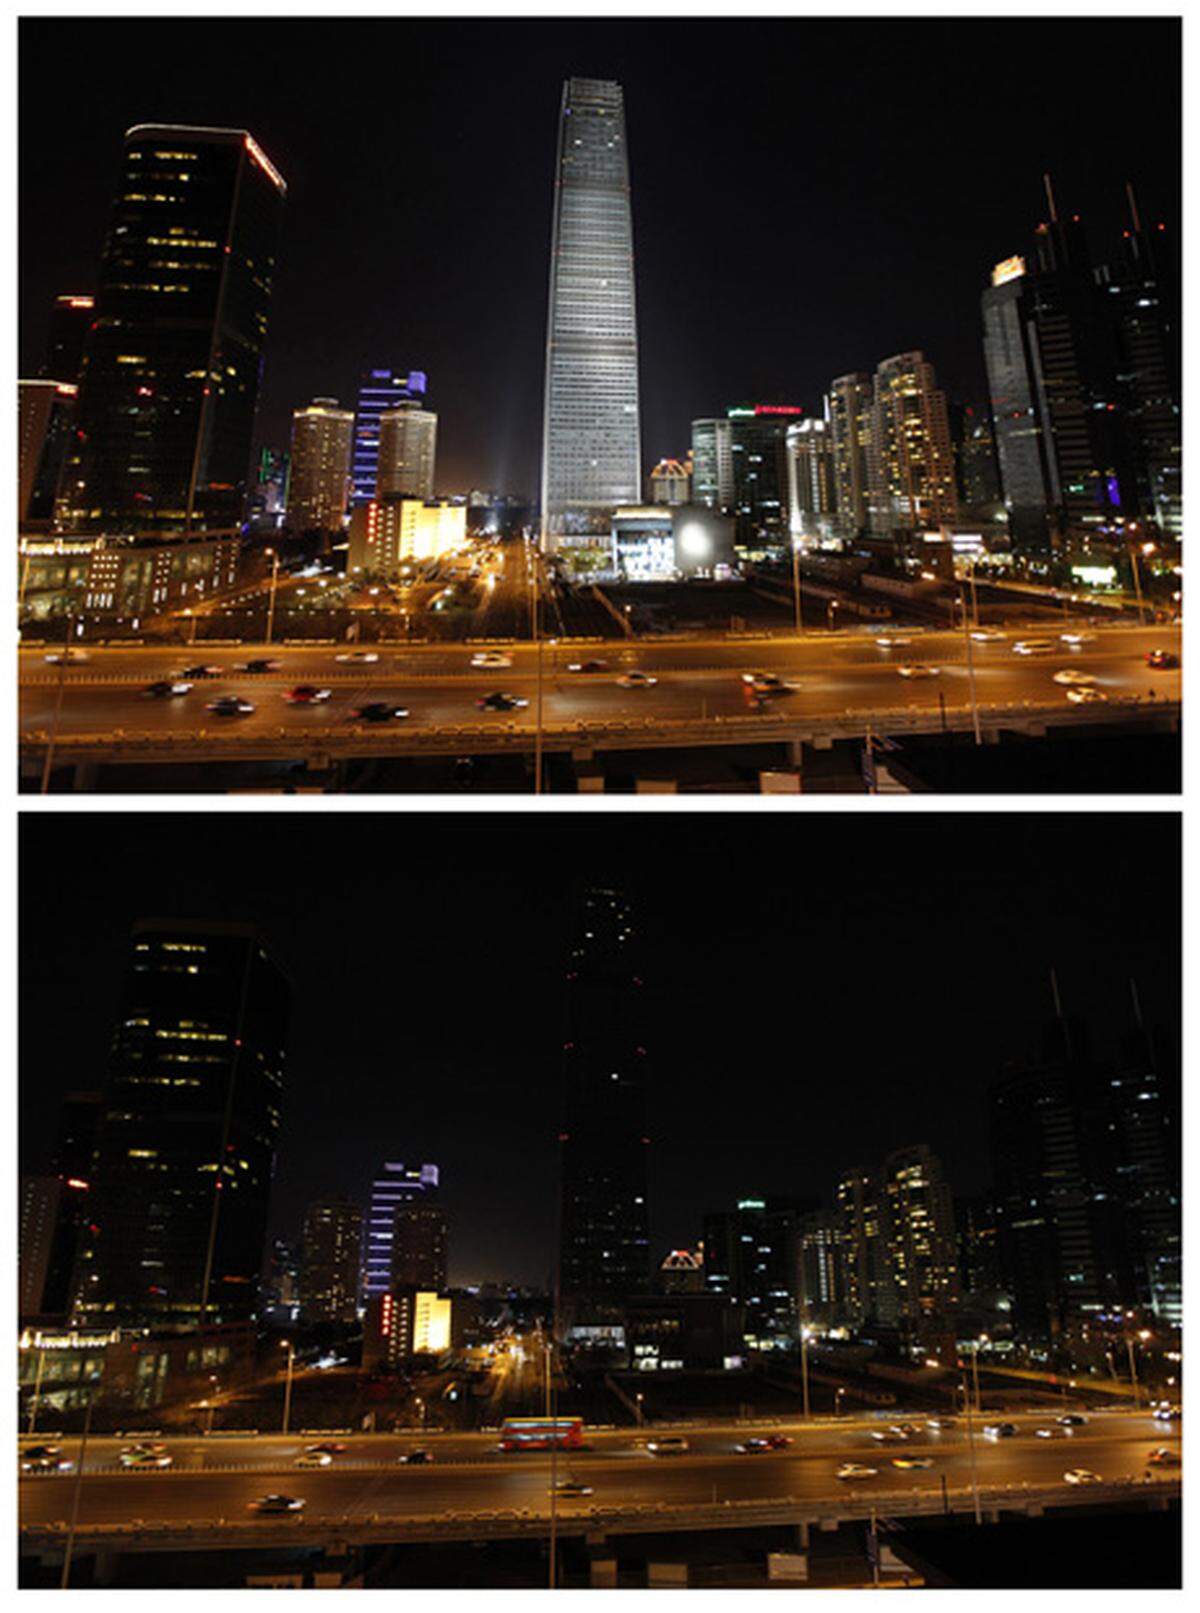 Turm drei des "China World Trade Center" in Peking versteckt sich im Dunkel der Earth Hour.